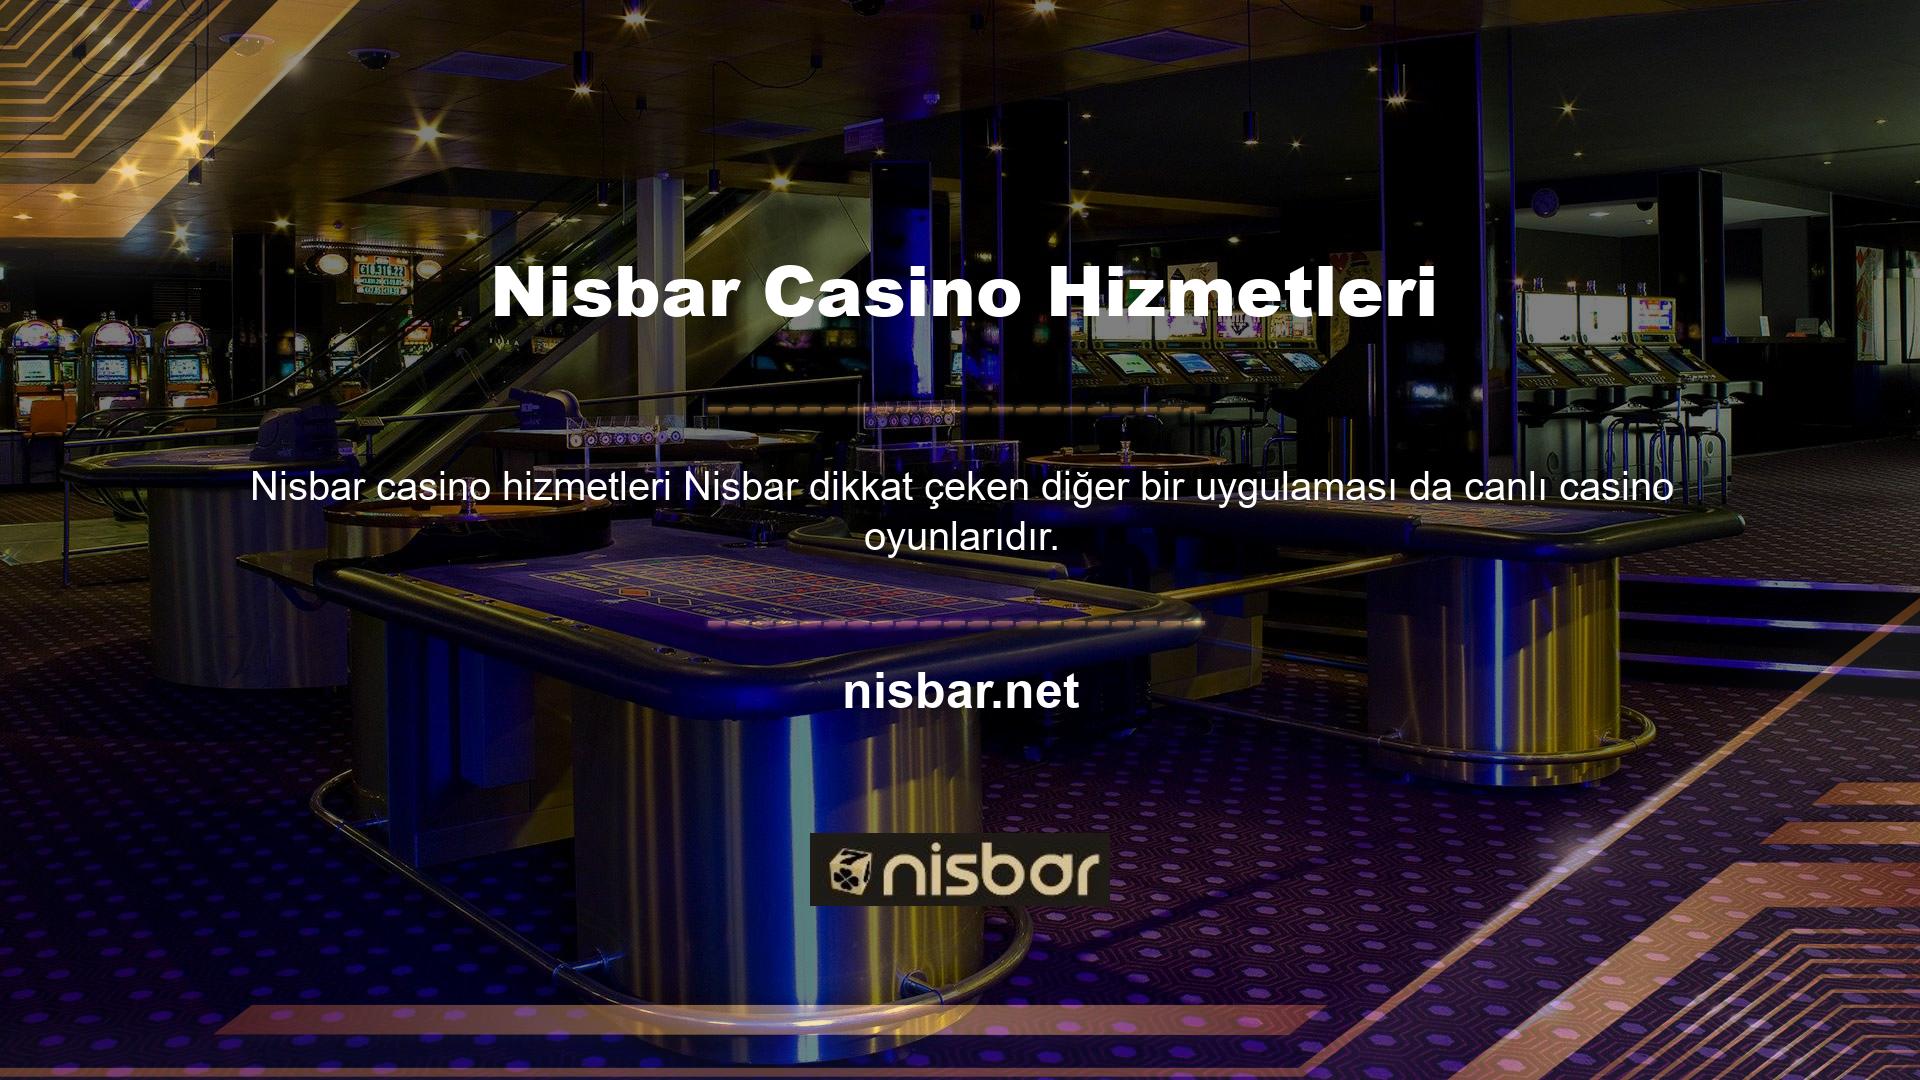 Canlı casino platformumuz size rulet, blackjack ve bakara gibi ünlü oyun masalarına erişim sağlar